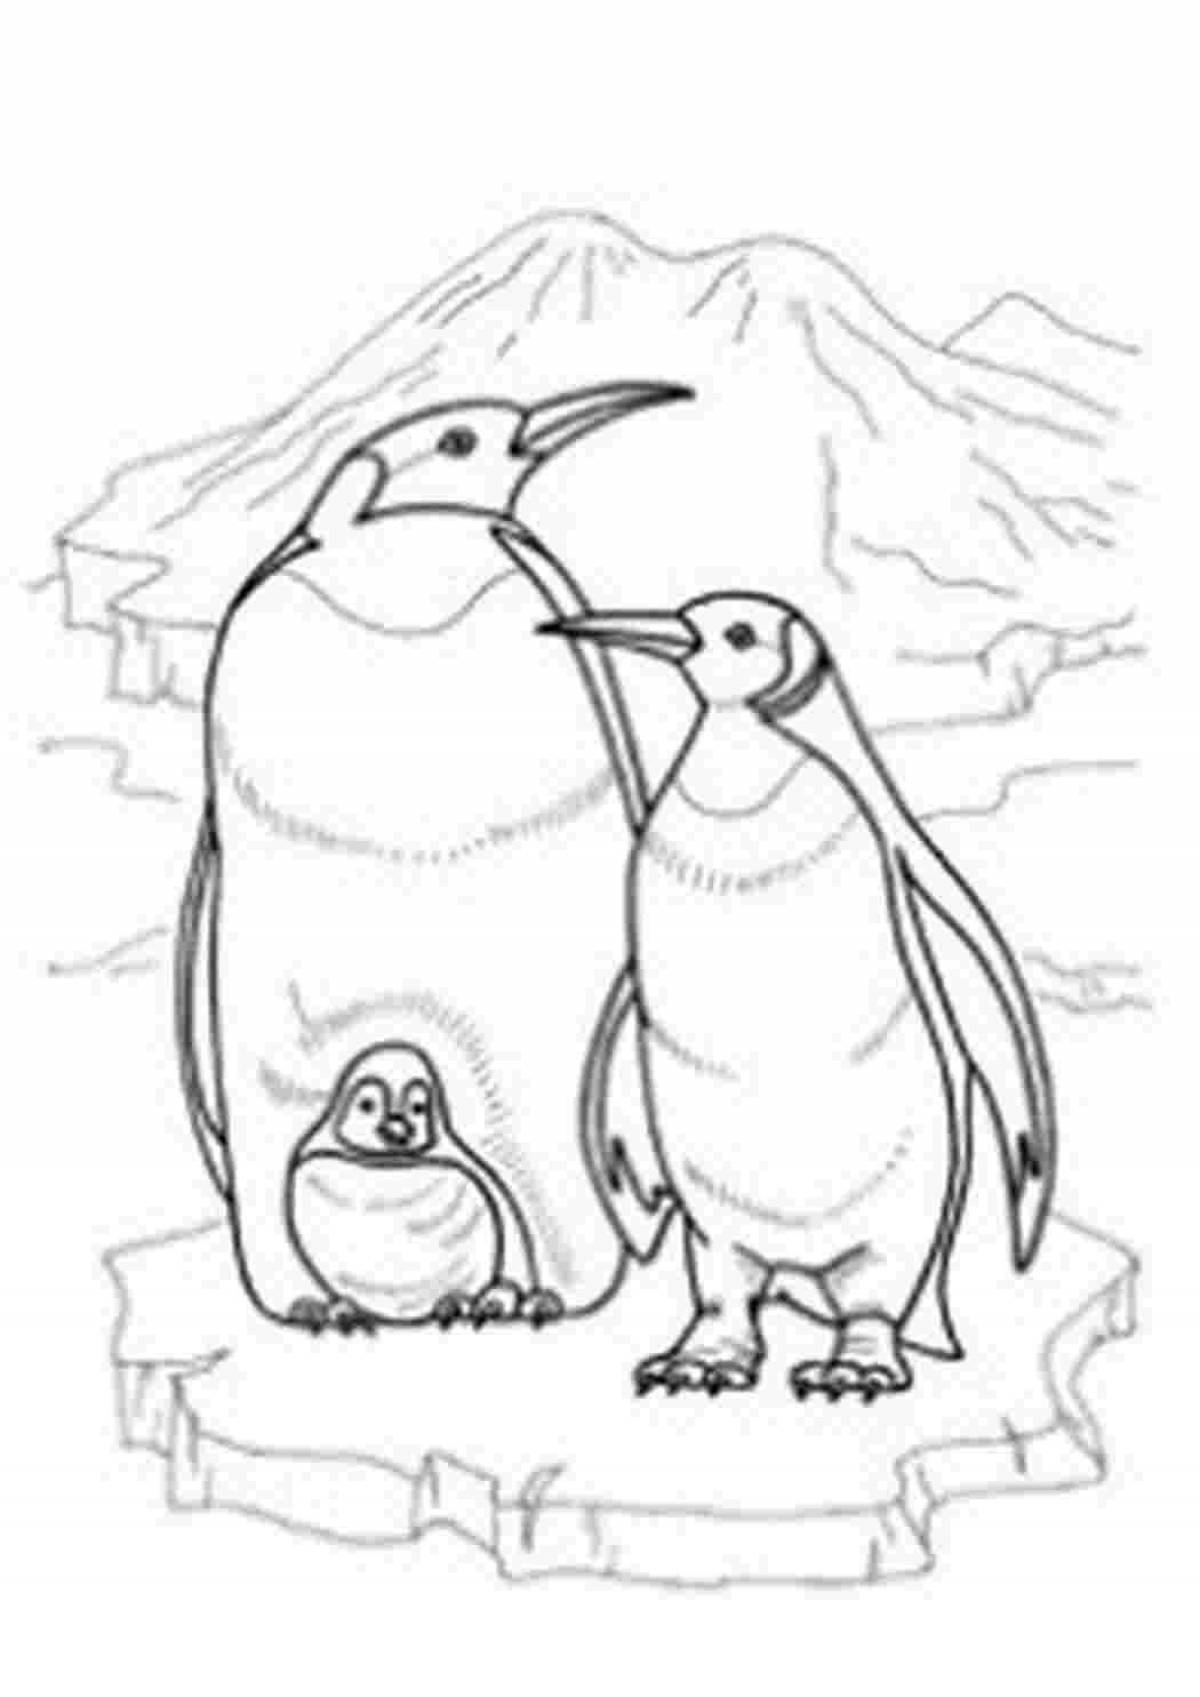 Сияющие пингвины антарктиды